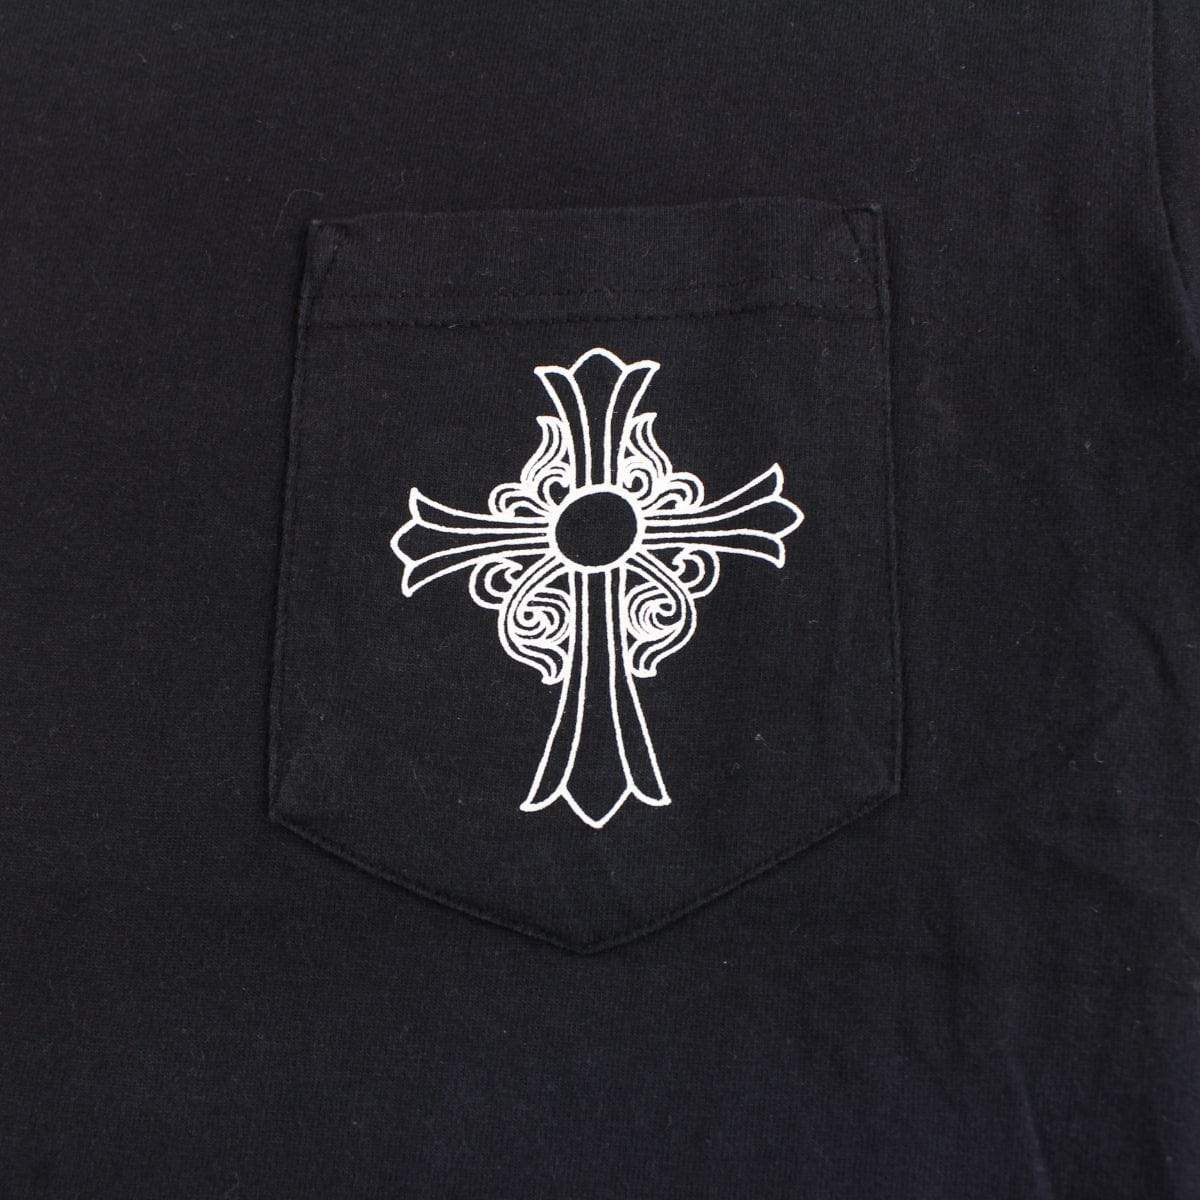 chrome hearts side & pocket logo tee black - SaruGeneral